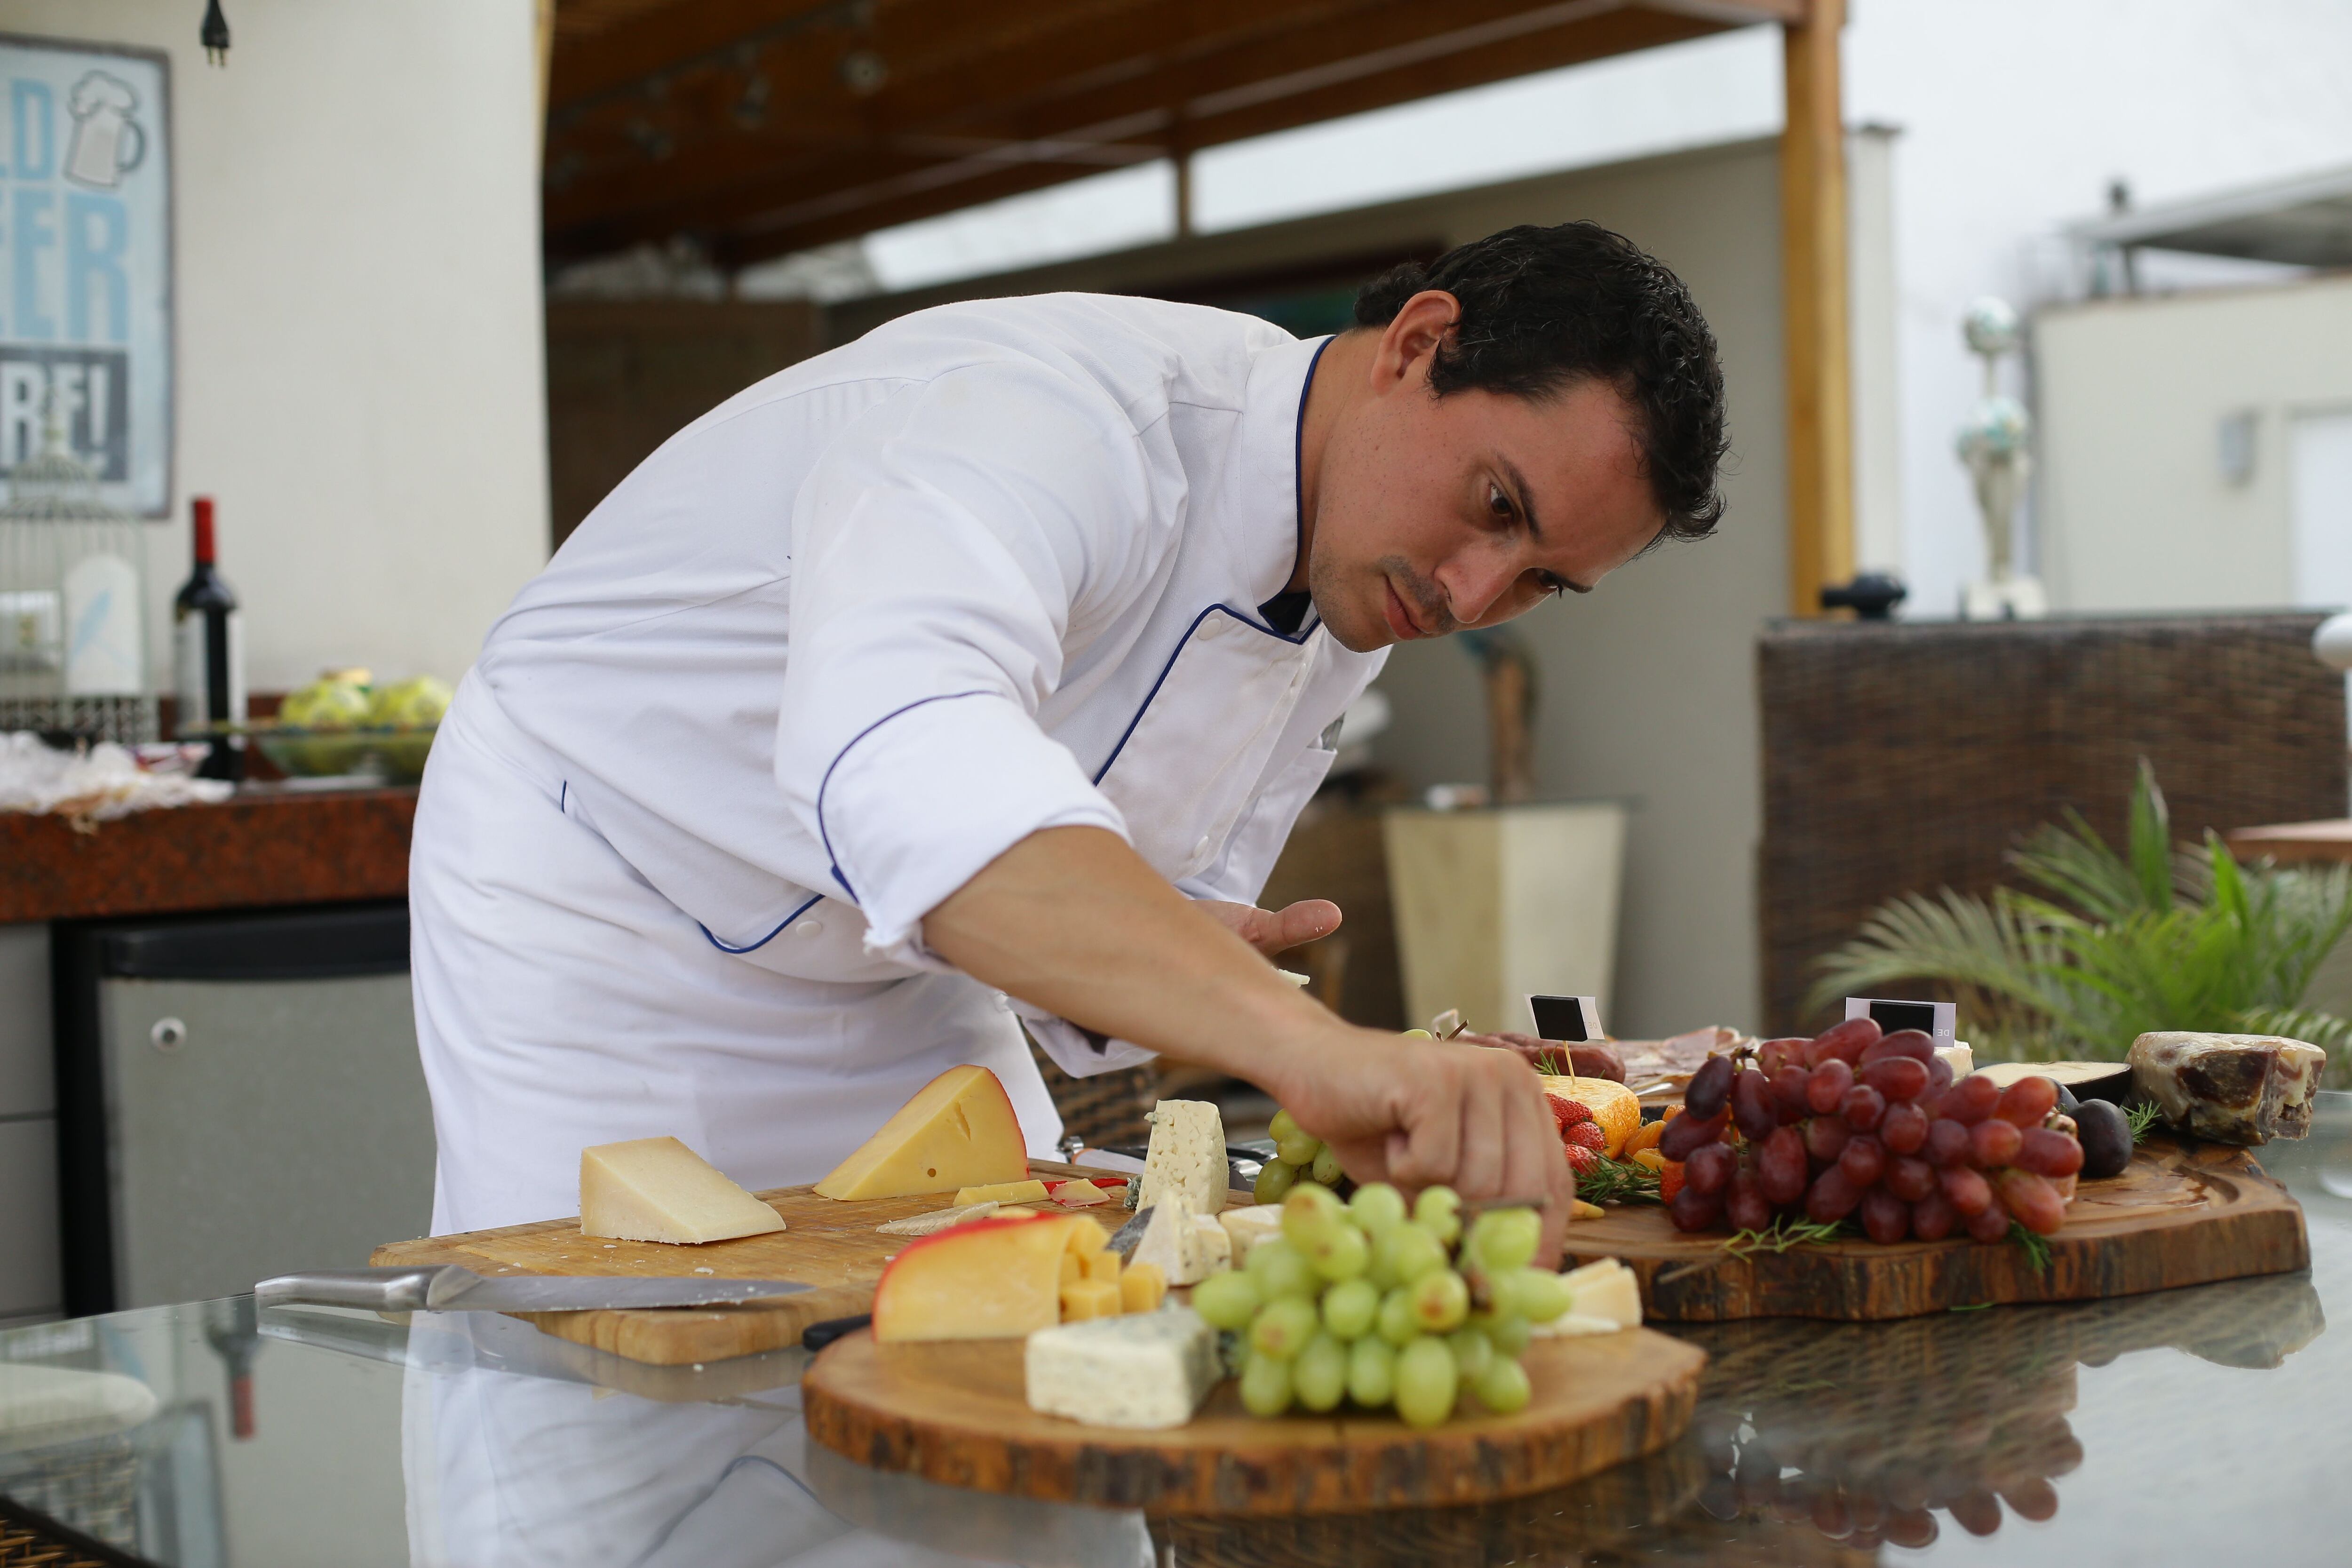 Juan Francisco Lezcano emprendió negocio de catering especializado en quesos para momentos íntimos junto a familia y amigos. (JESÚS SAUCEDO/ GEC)